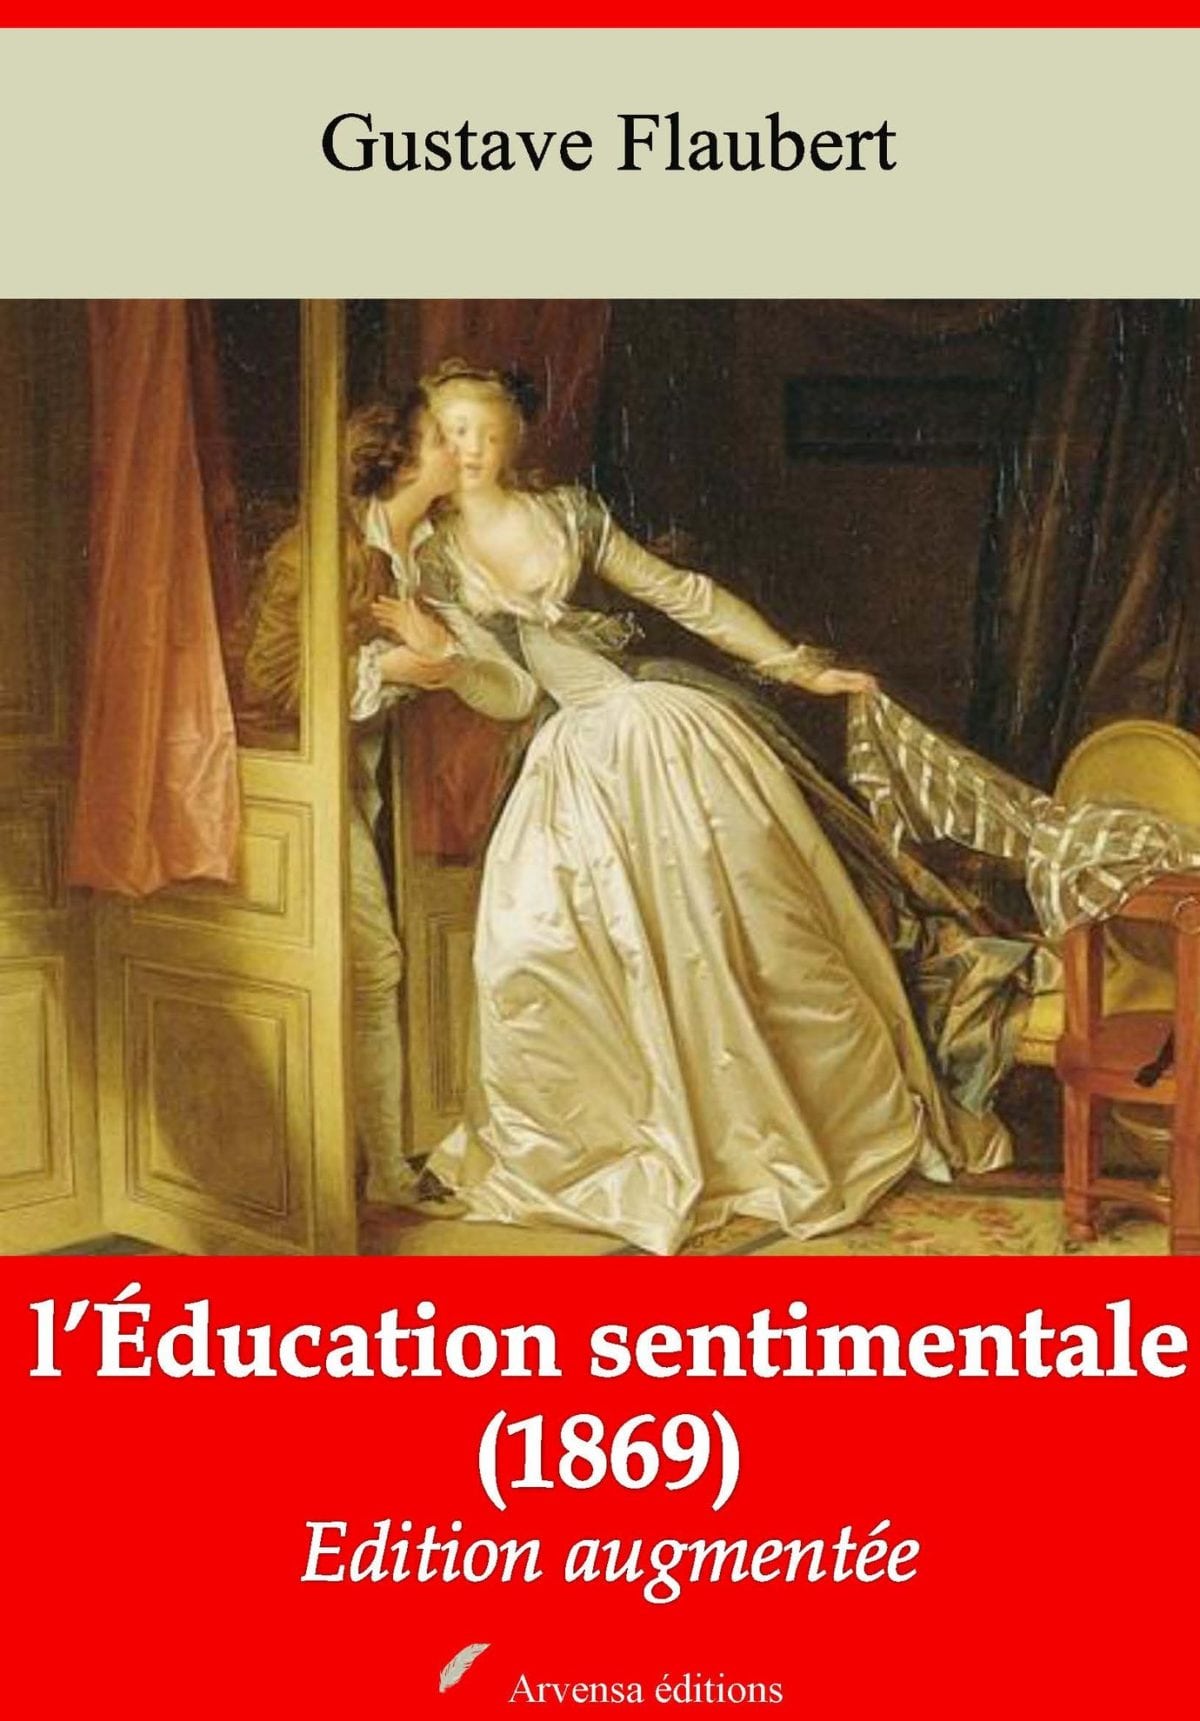 De leerschool der liefde by Gustave Flaubert